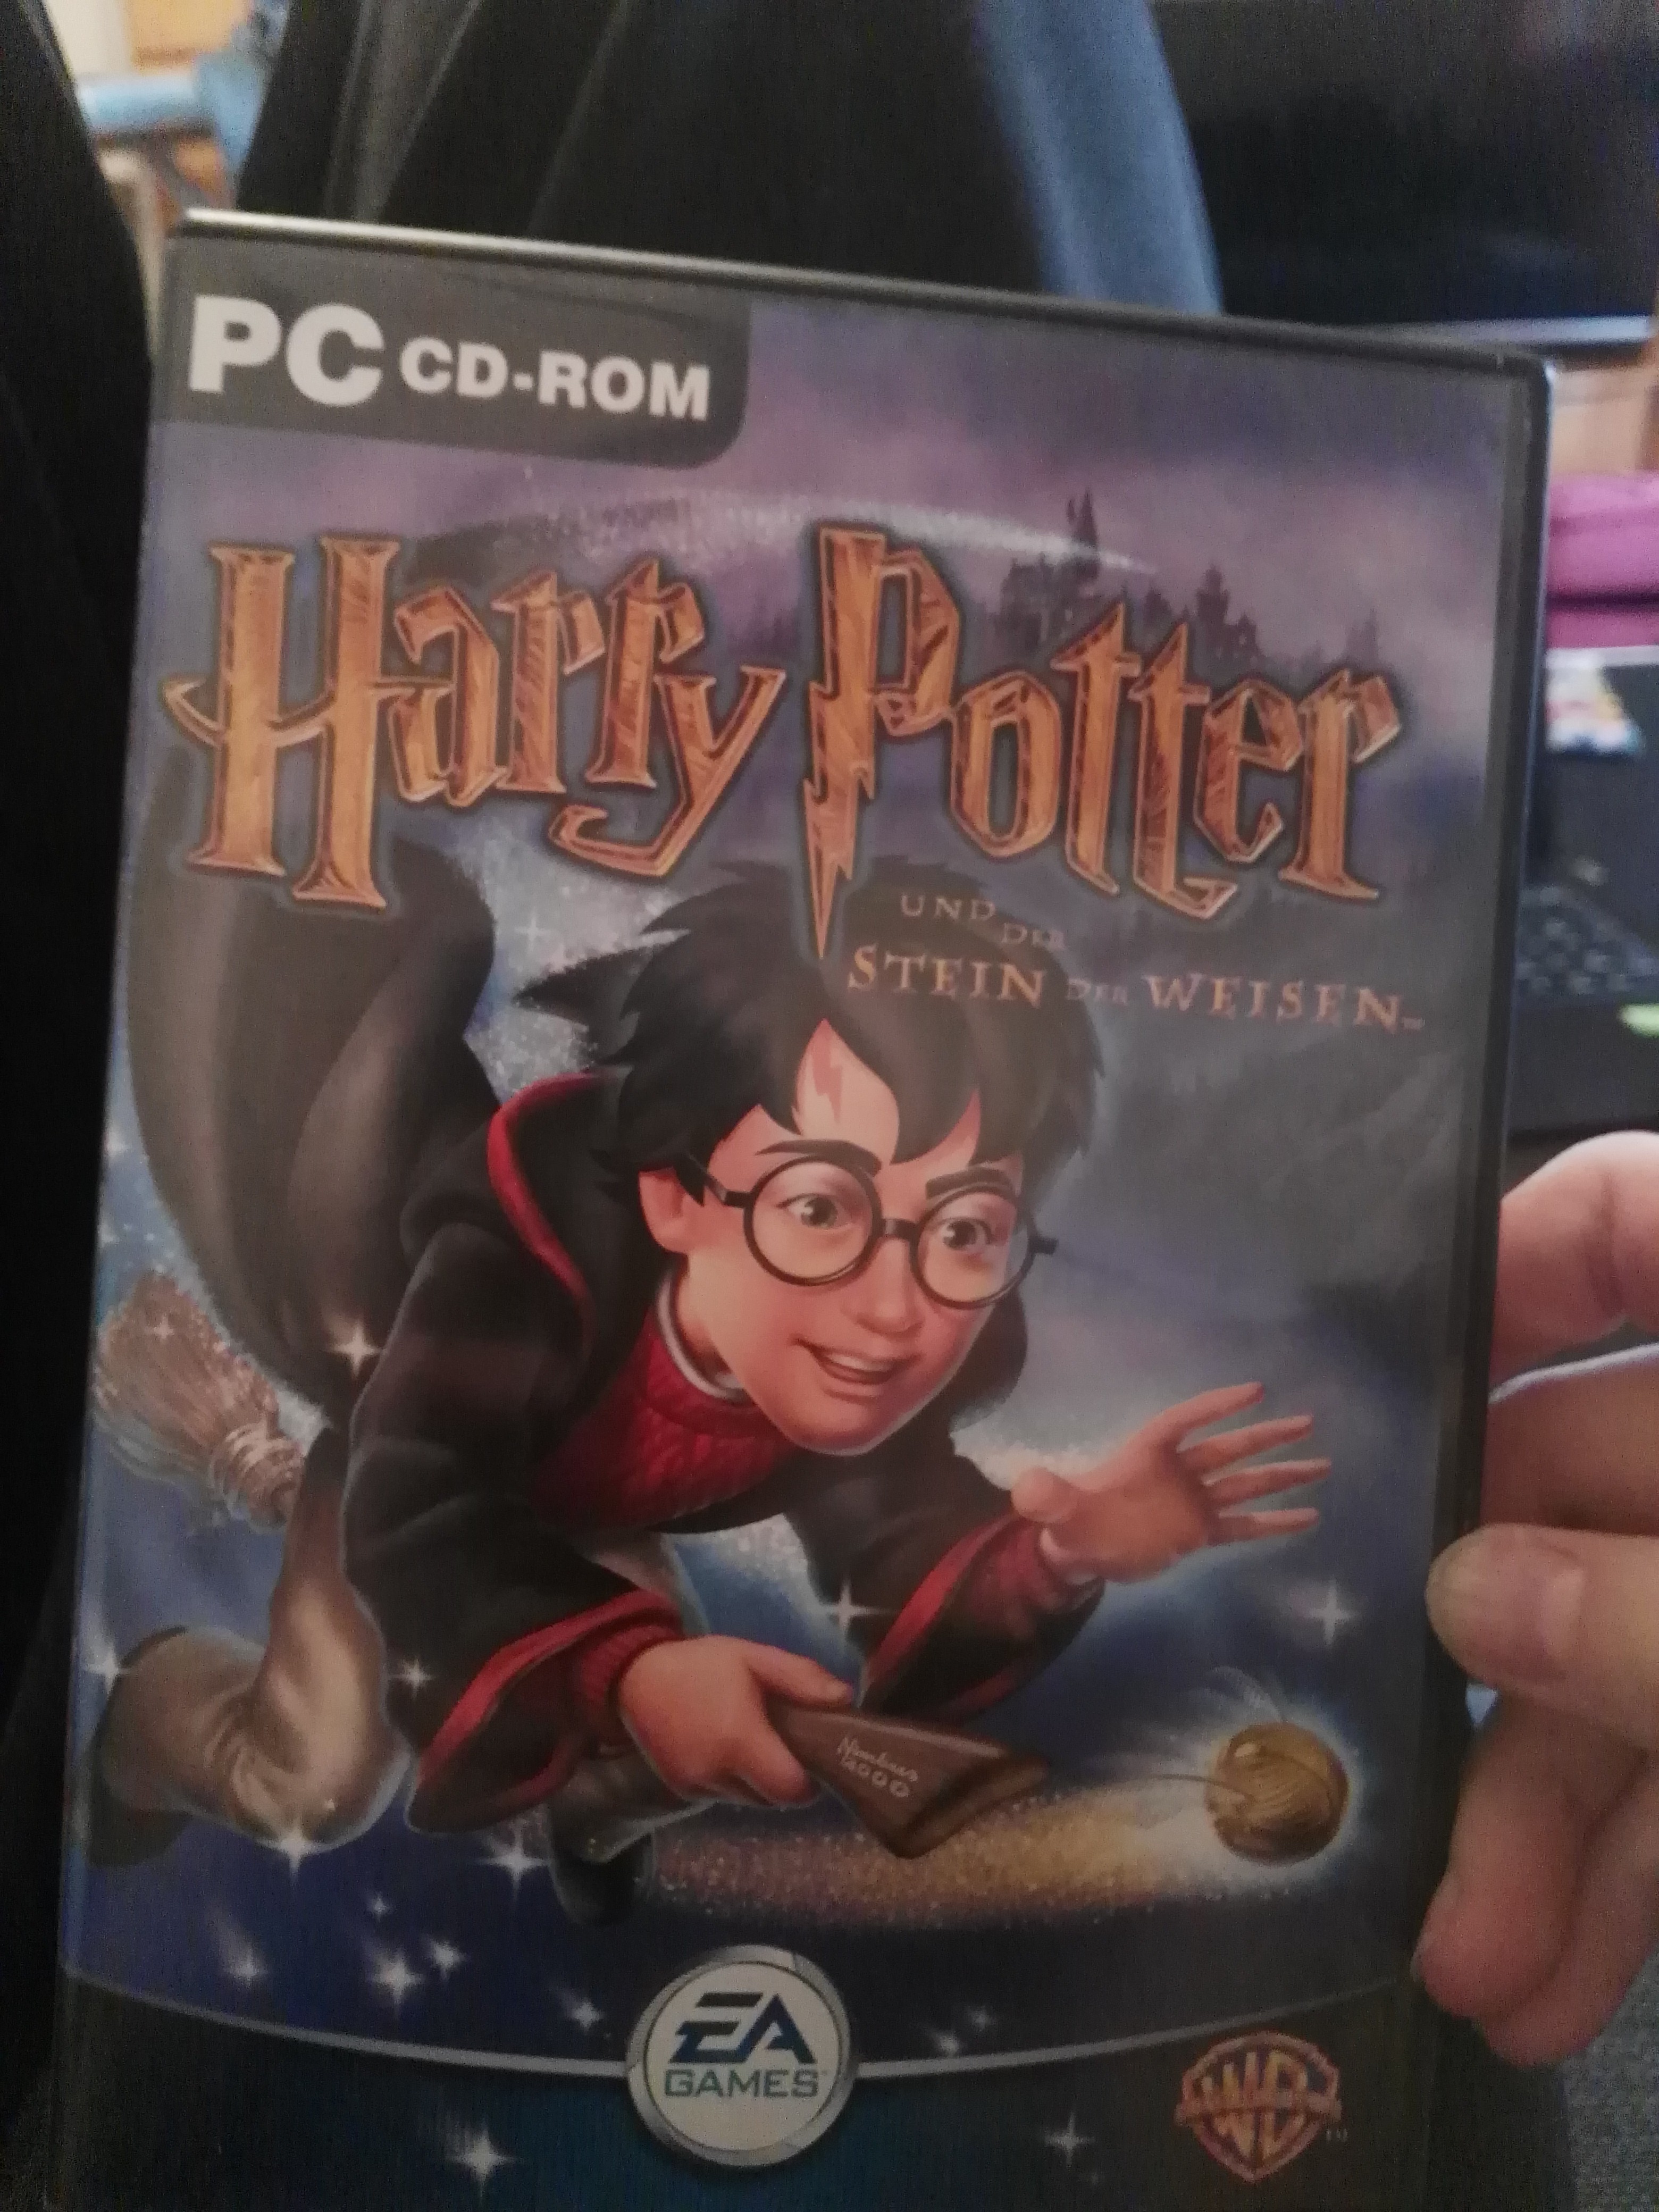 Harry Potter Computer Spiel Auf Windows 10 Spielen Pc Spiele Computerspiele